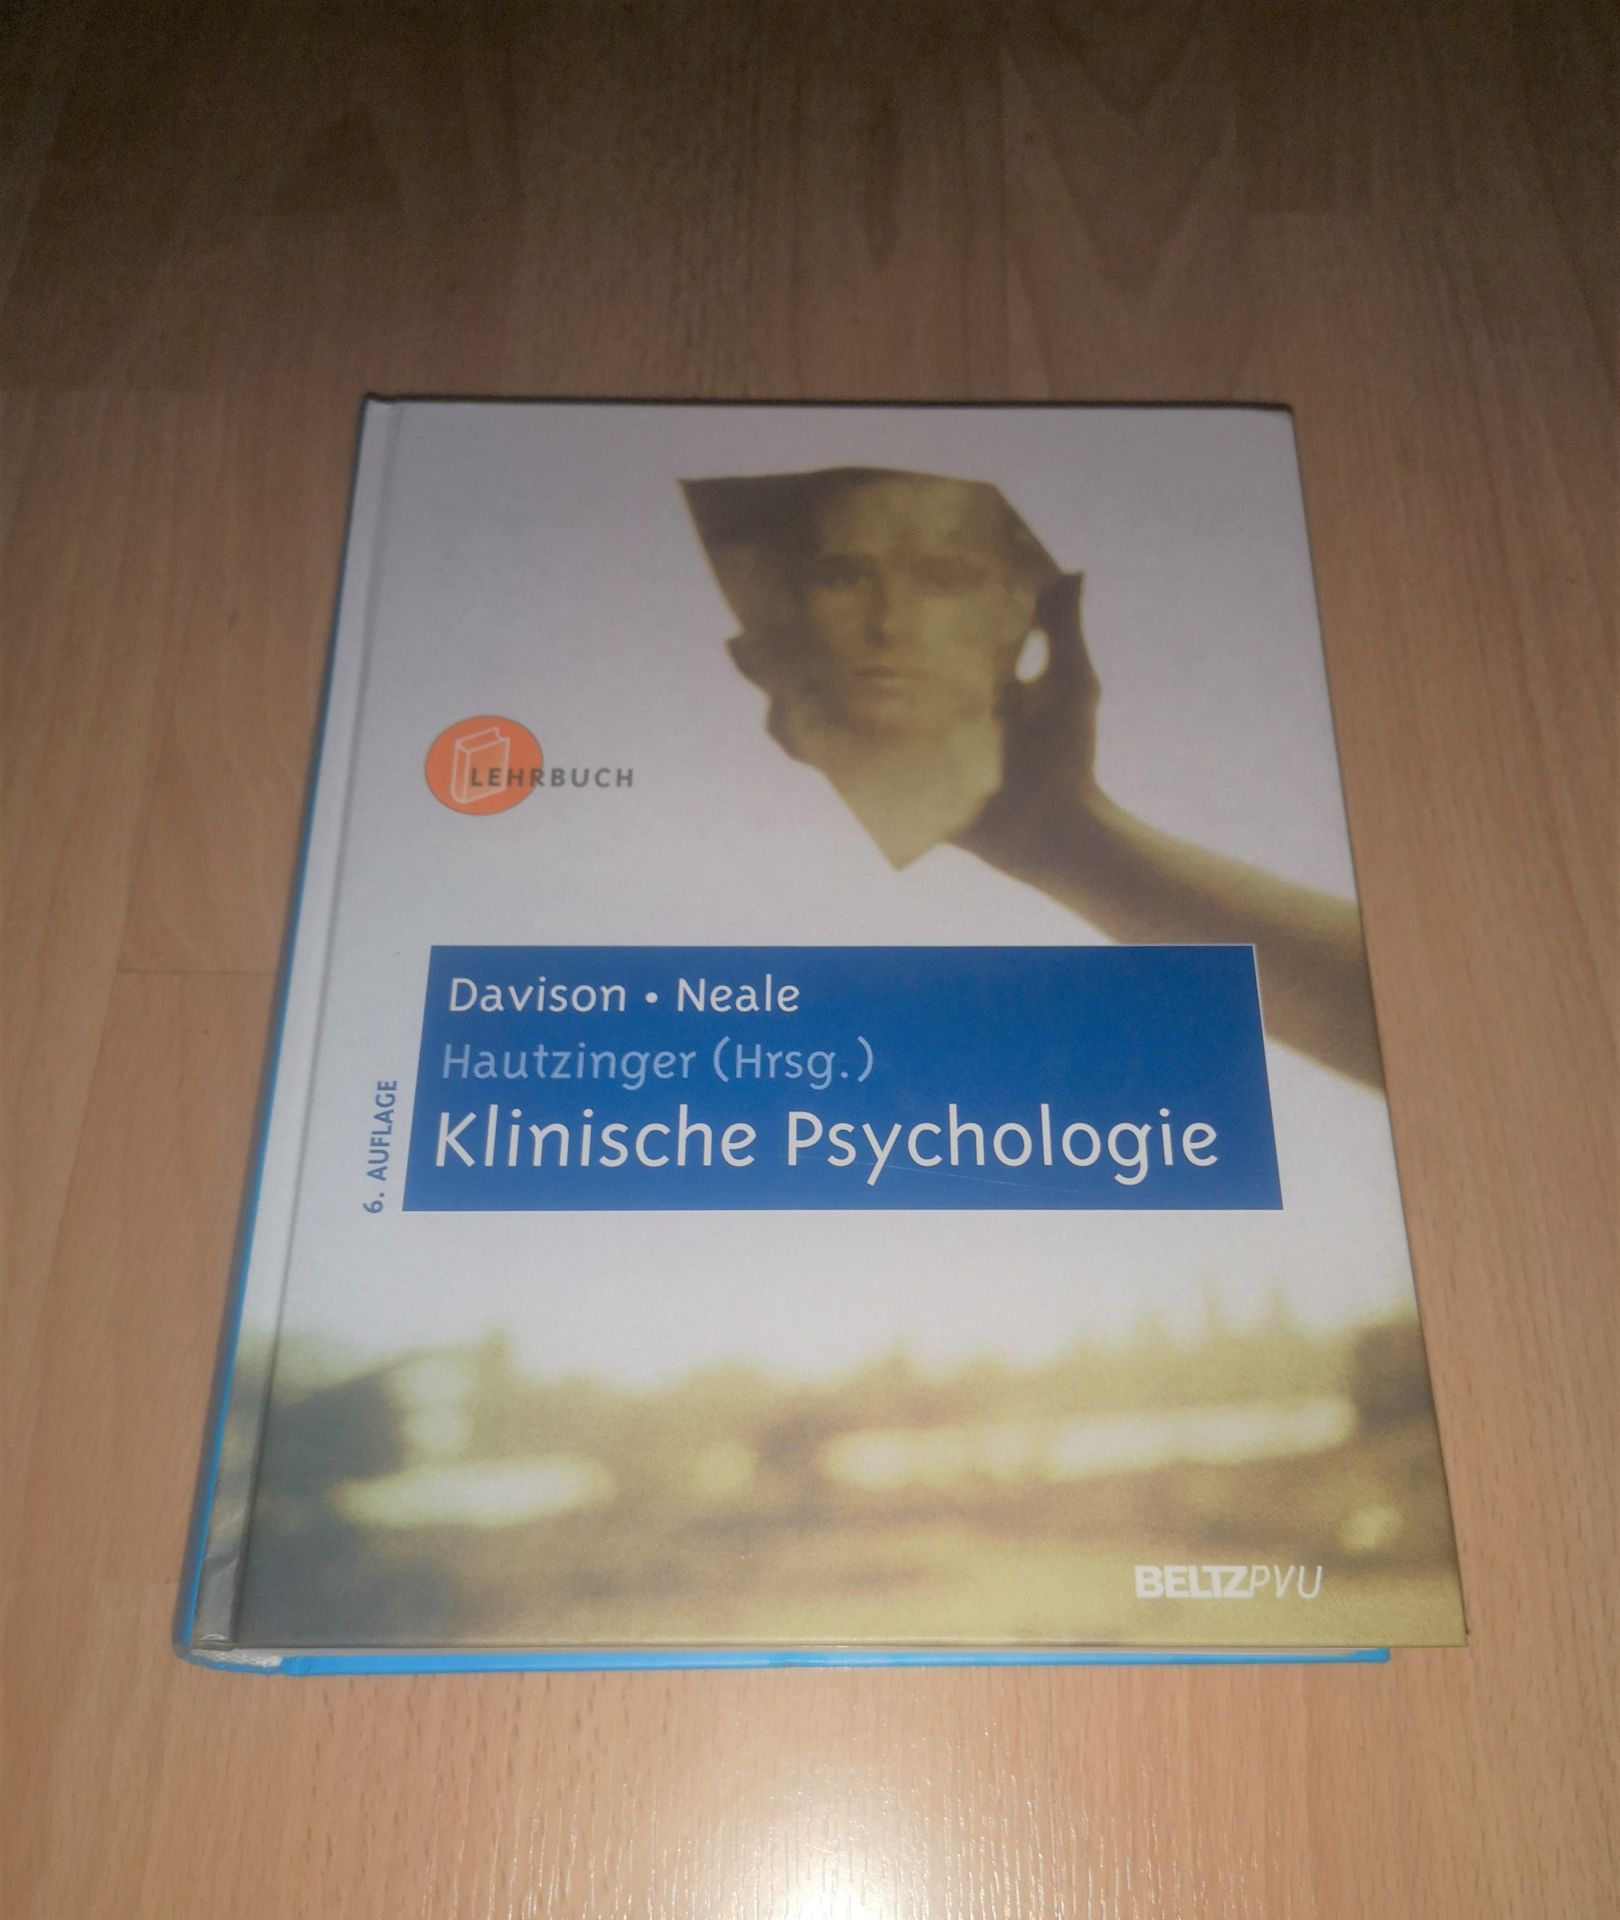 Davison, Neale, Hautzinger, Klinische Psychologie - Lehrbuch - Davison und Neale